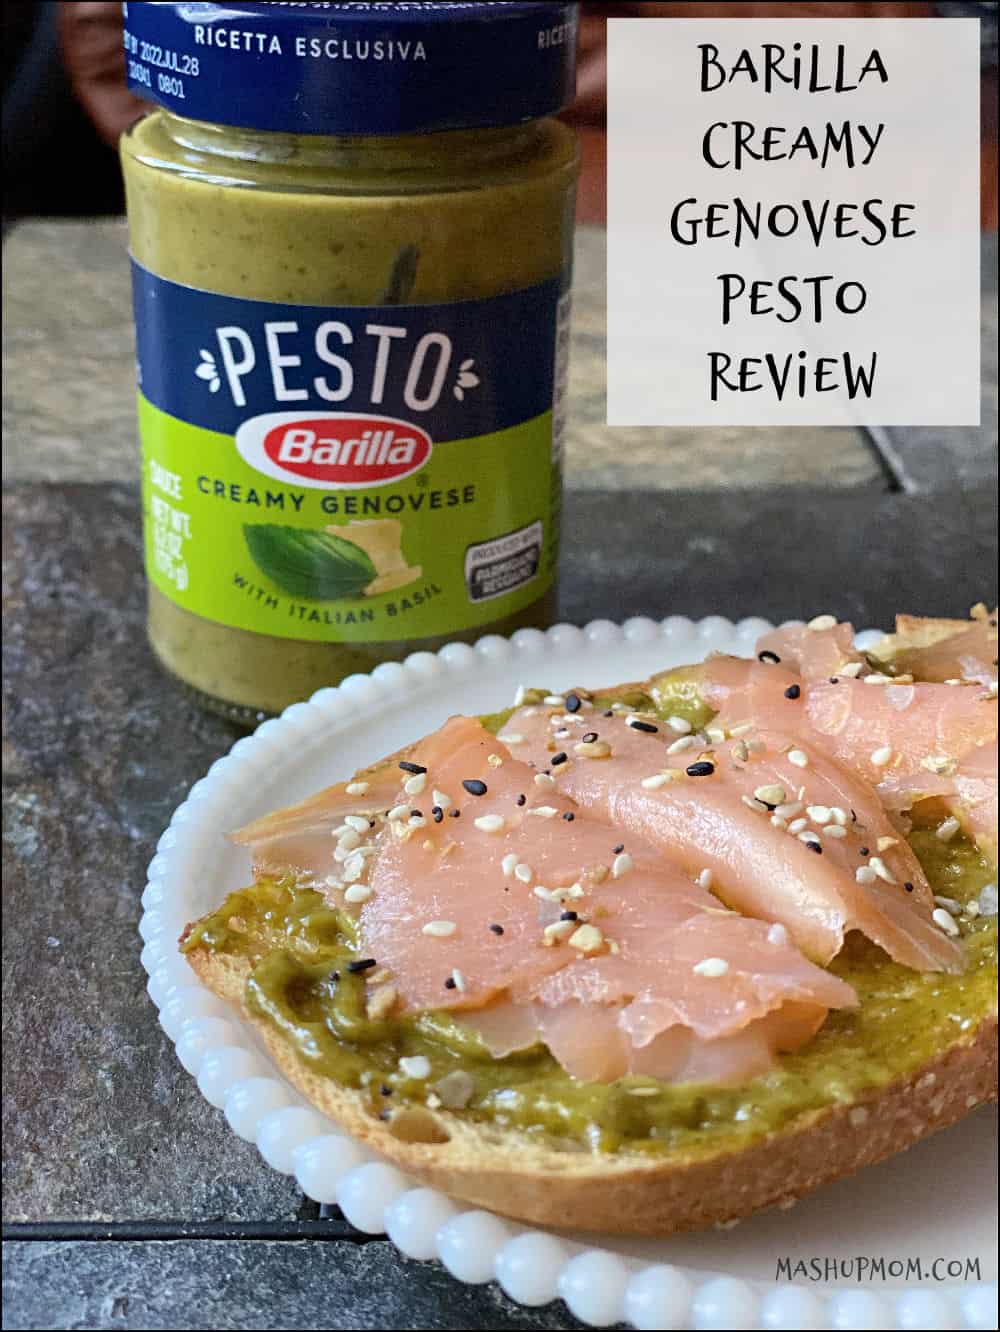 A Barilla Creamy Genovese Pesto Review